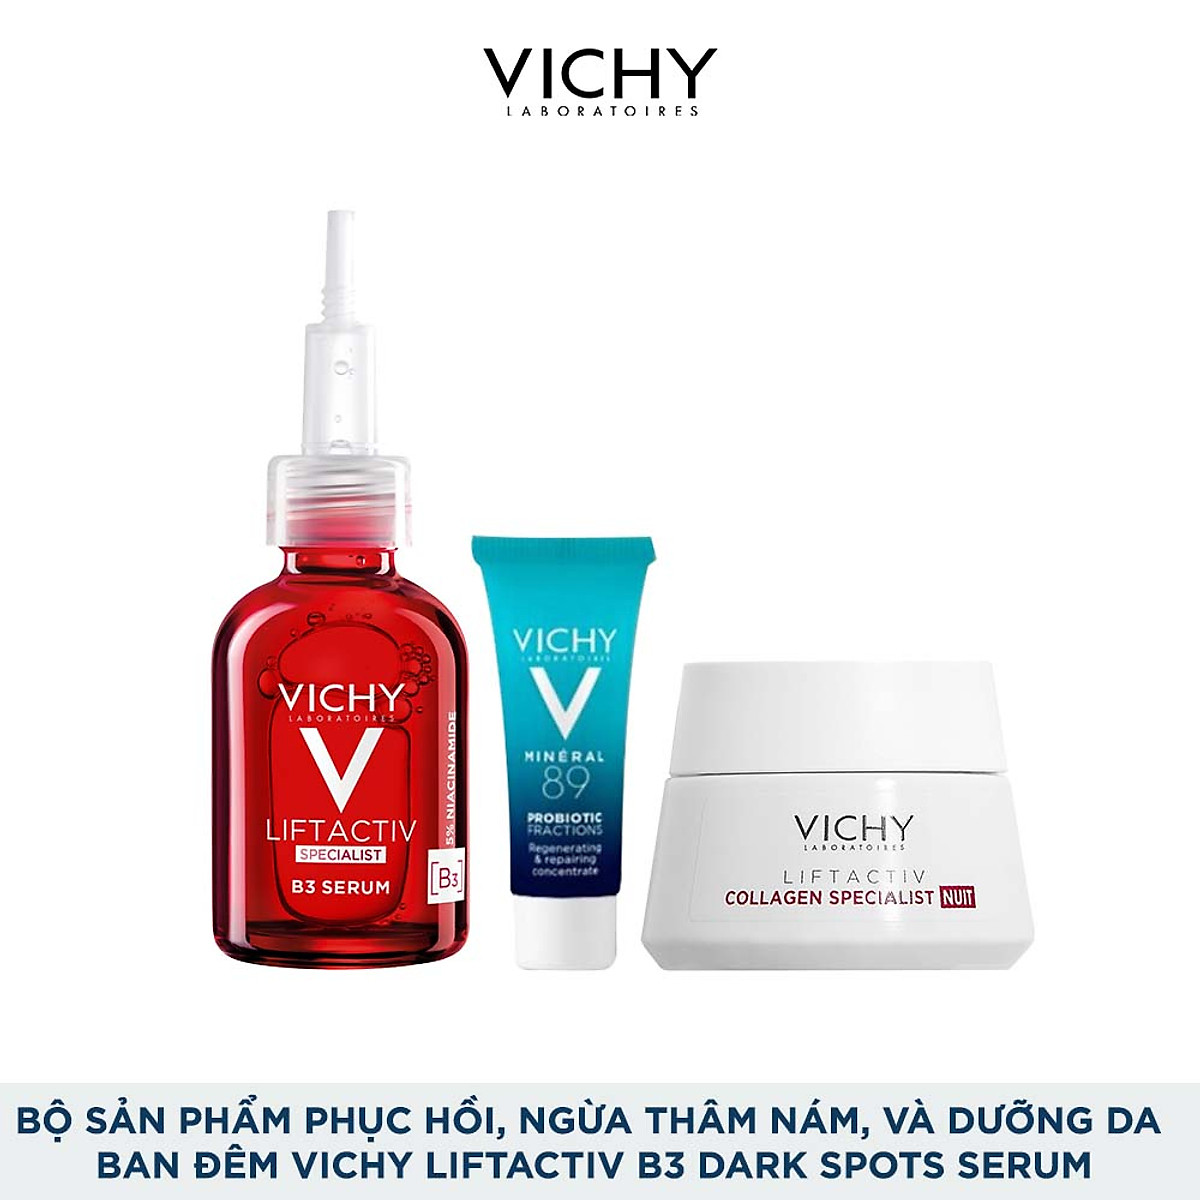 Bộ sản phẩm phục hồi, ngừa thâm nám, đốm nâu và dưỡng da ban đêm Vichy Liftactiv B3 dark spots serum